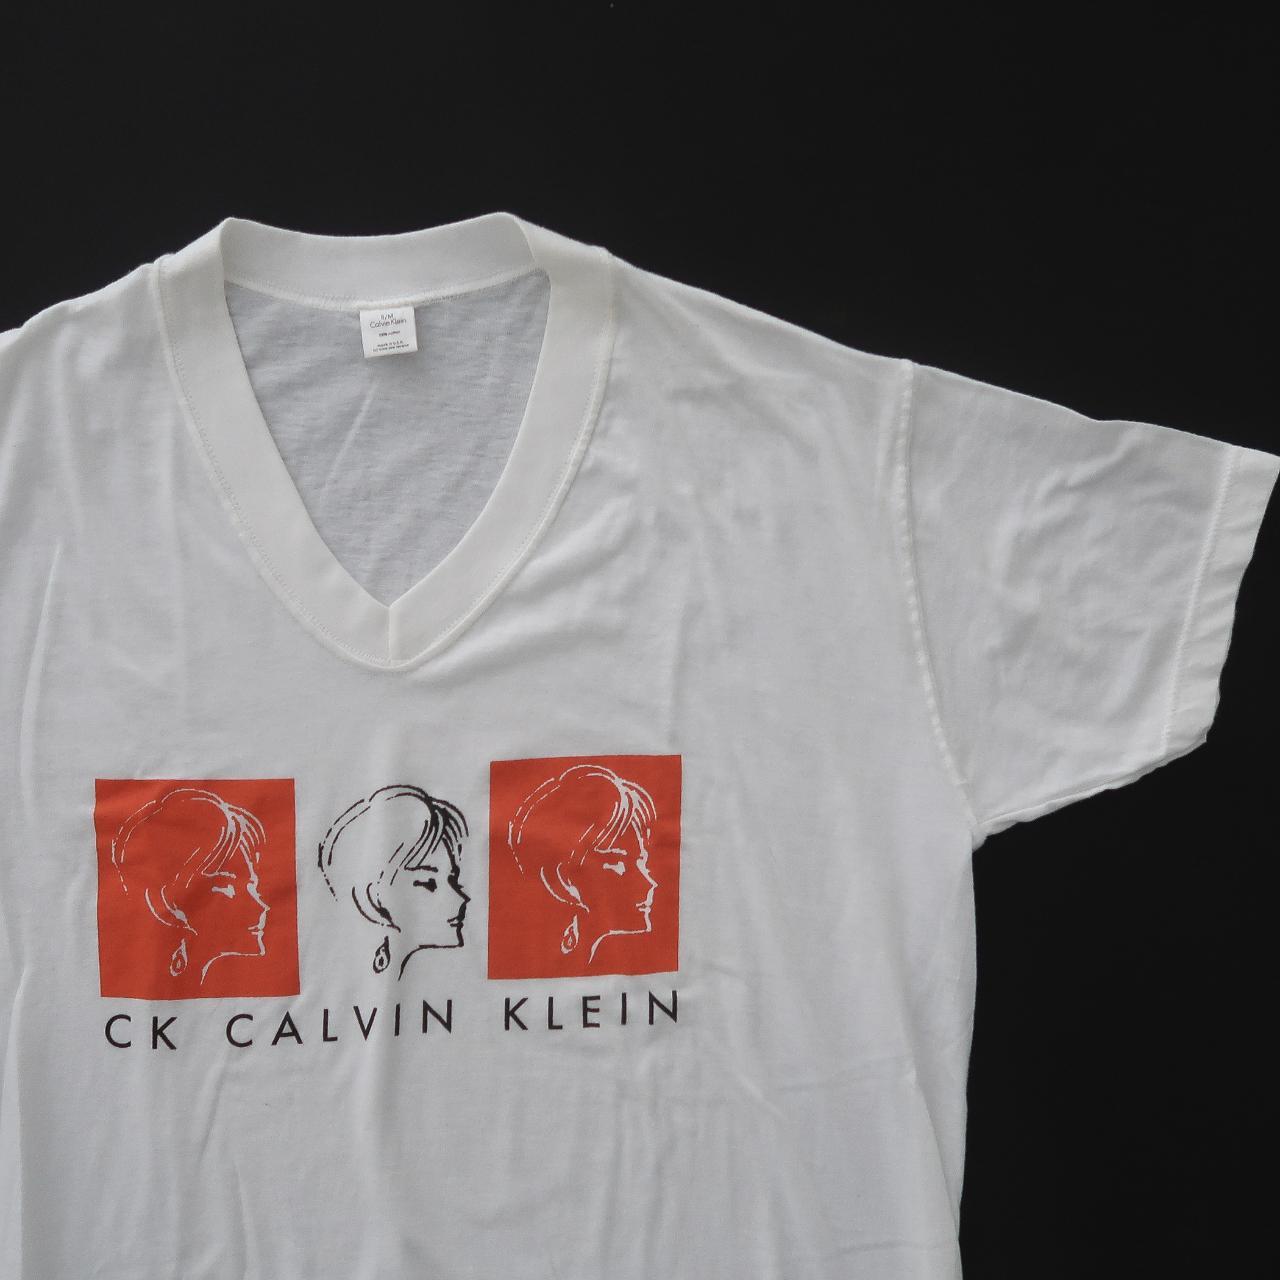 sleep Vintage 90s Klein retro Calvin - Depop shirt. Rad...